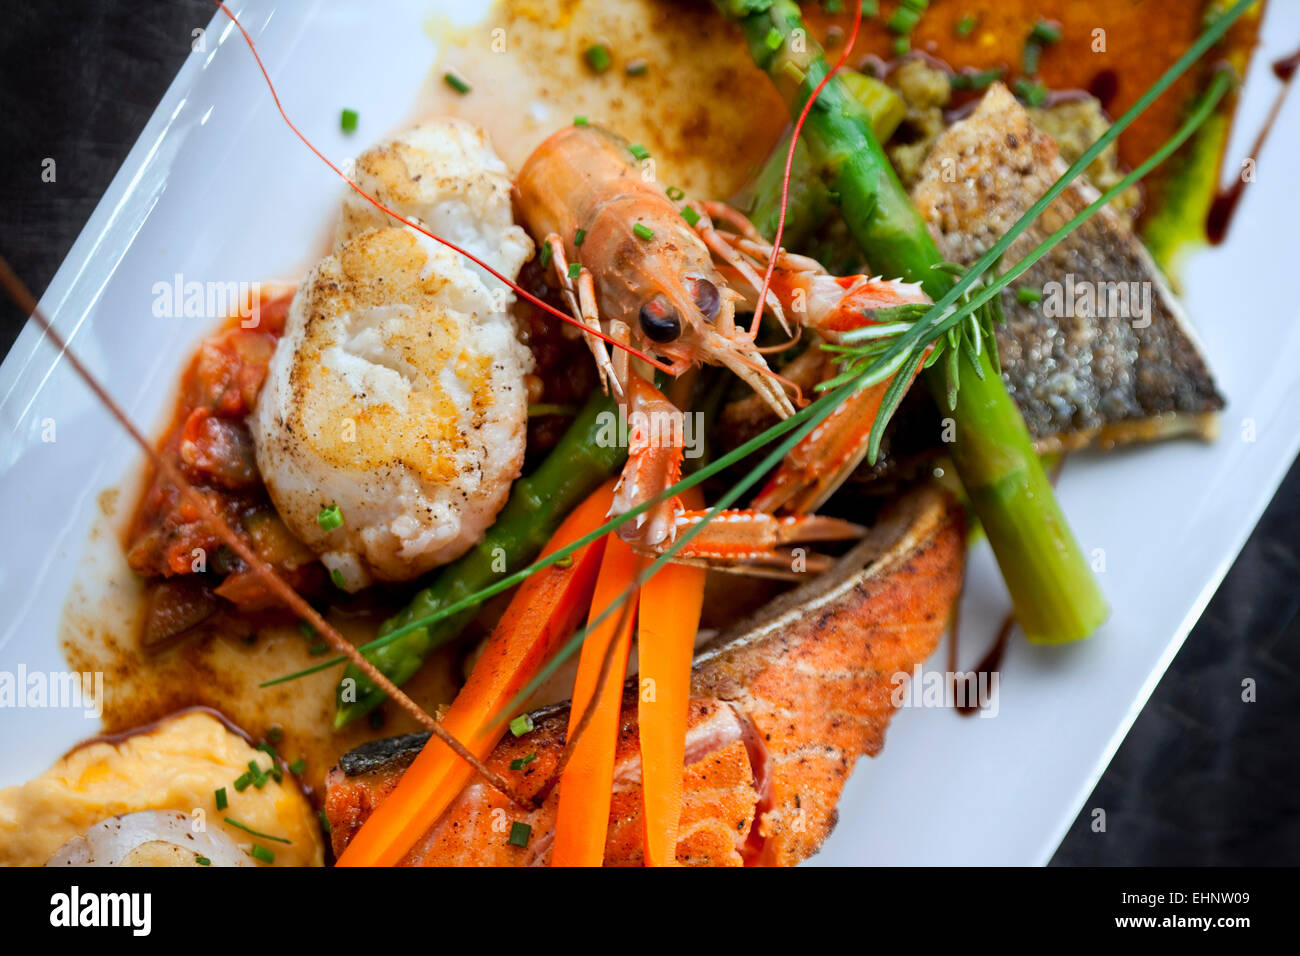 Plato con crustáceos, pescados, verduras y salsa Foto de stock